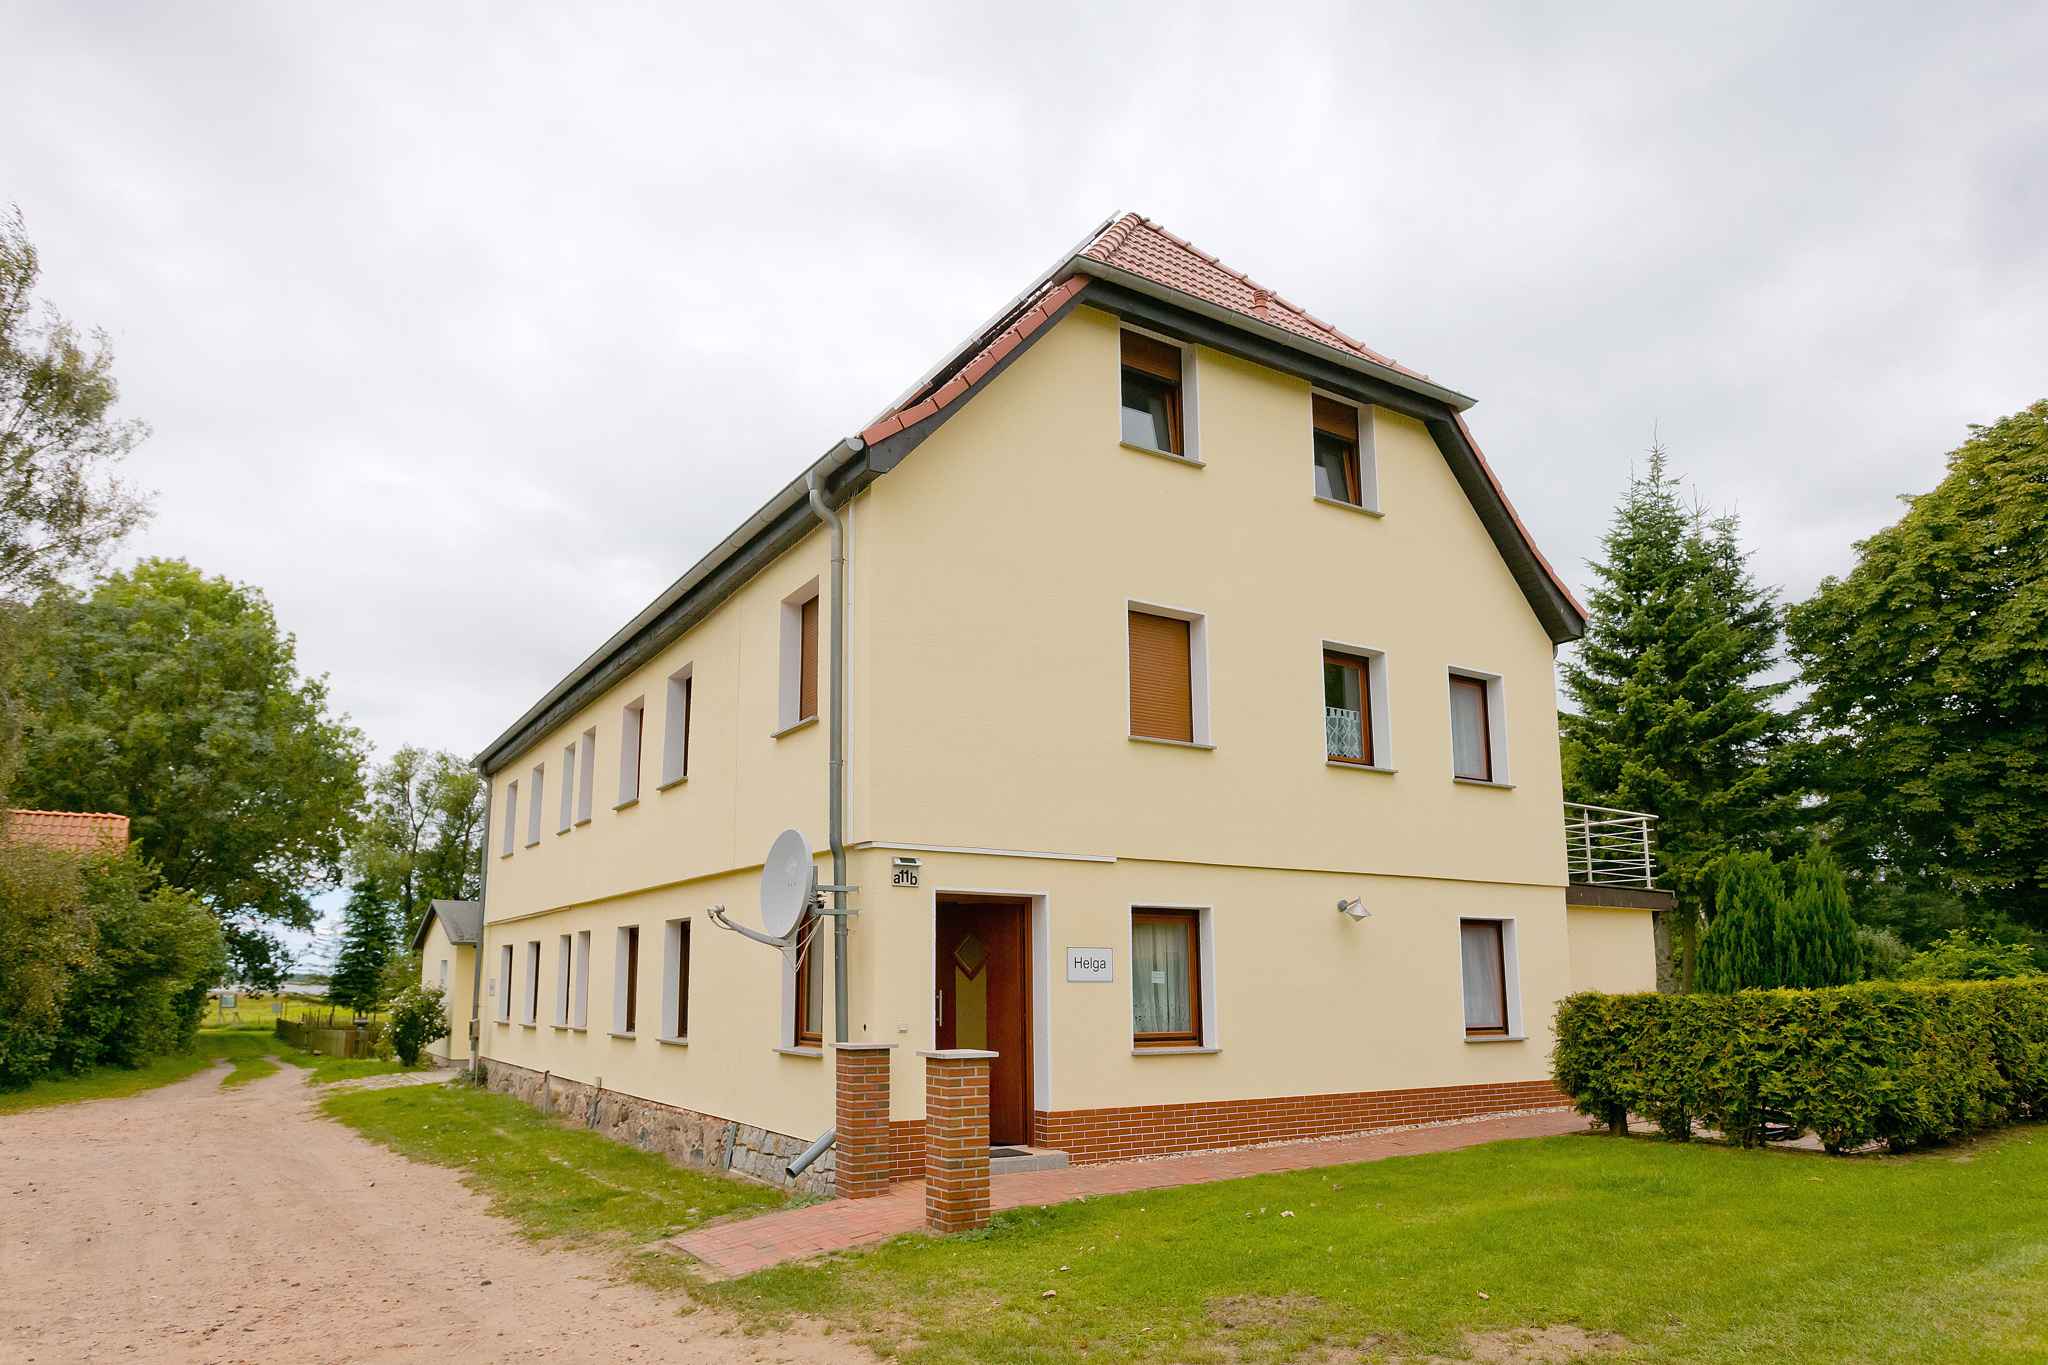 Bungalow mit Seeblick Ferienhaus in Mecklenburg Vorpommern